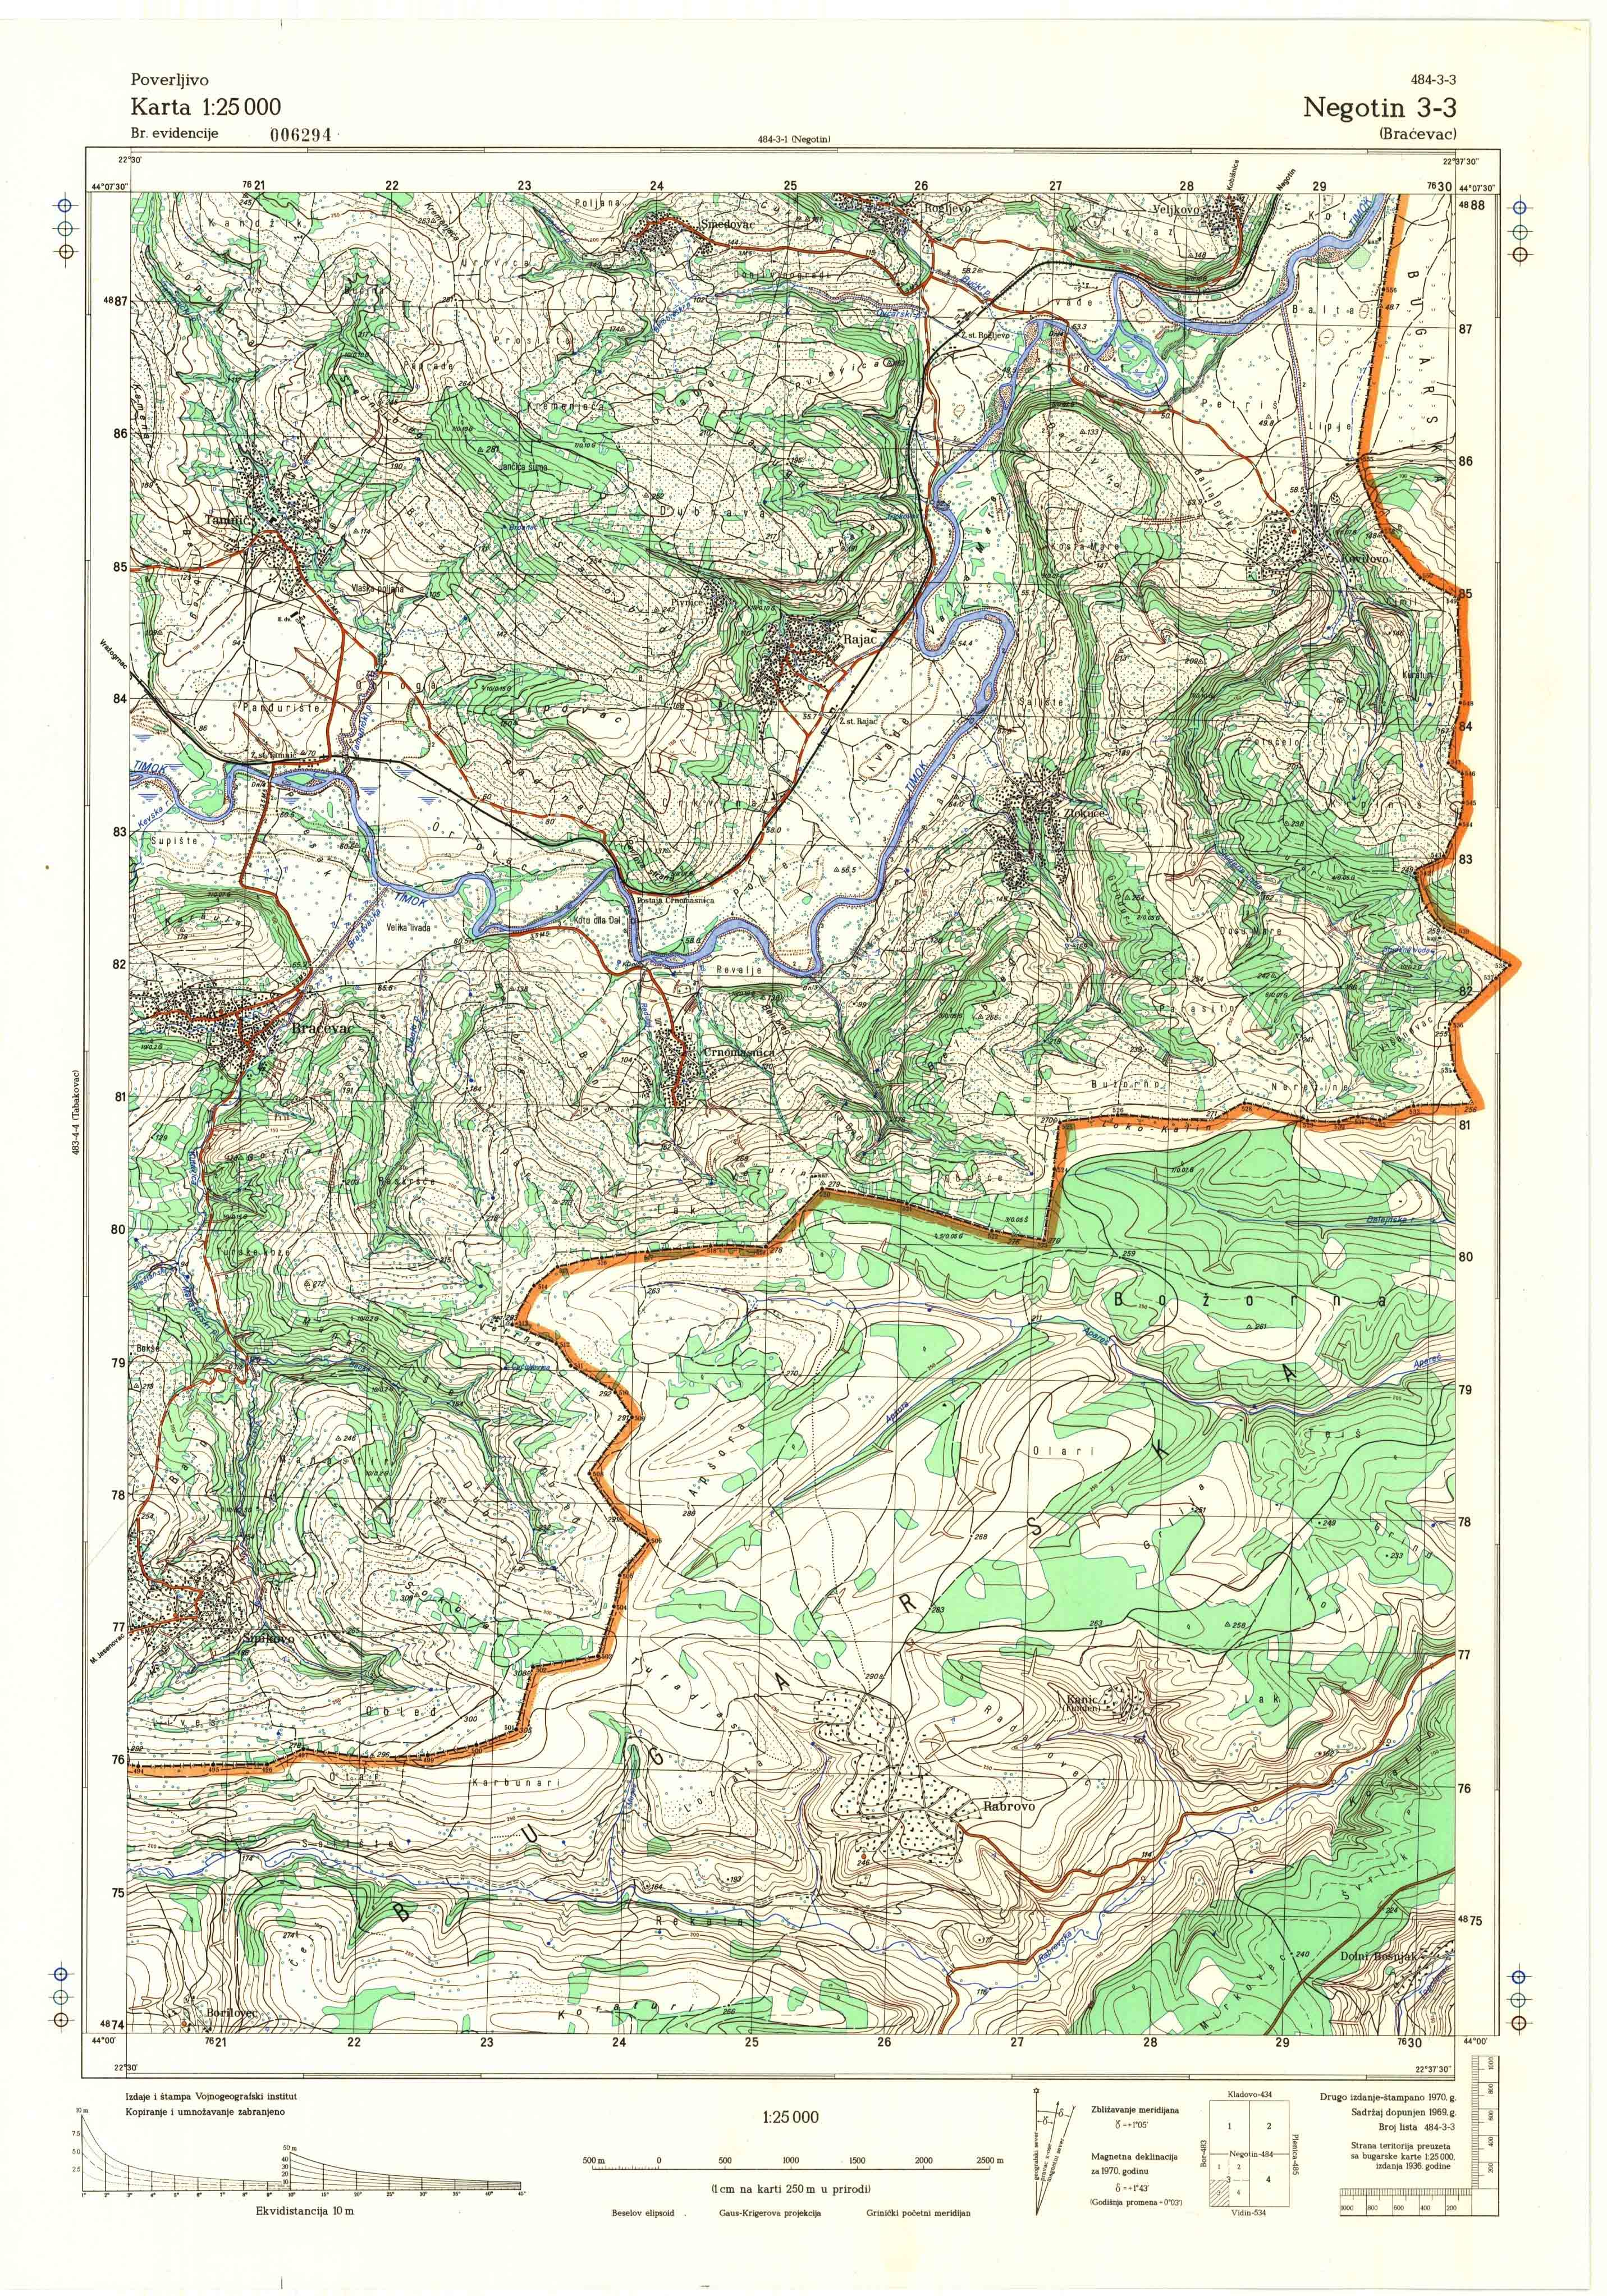  topografska karta srbije 25000 JNA  Negotin